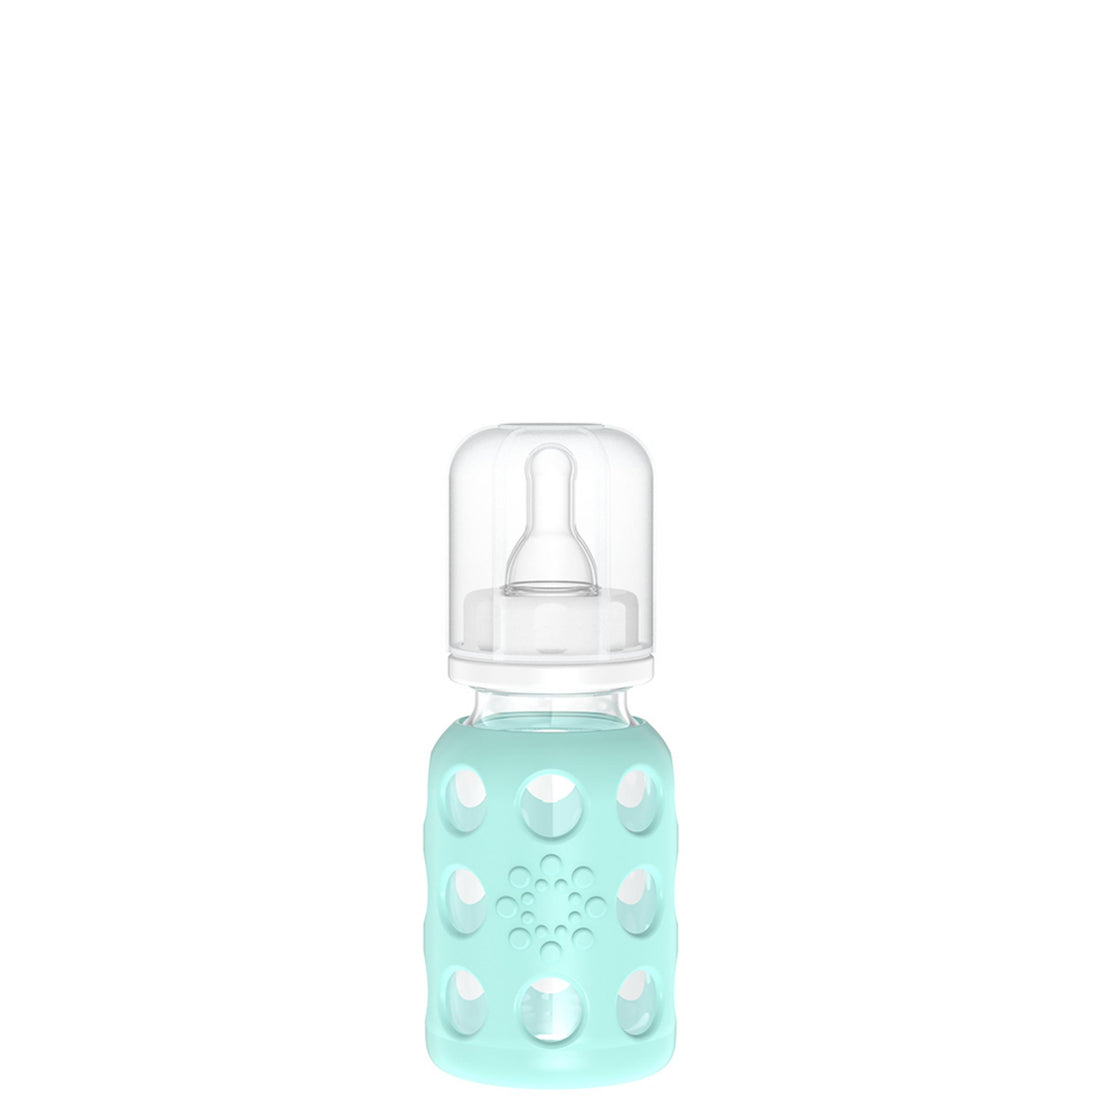 Lifefactory 4oz Glass Bottle - Mint